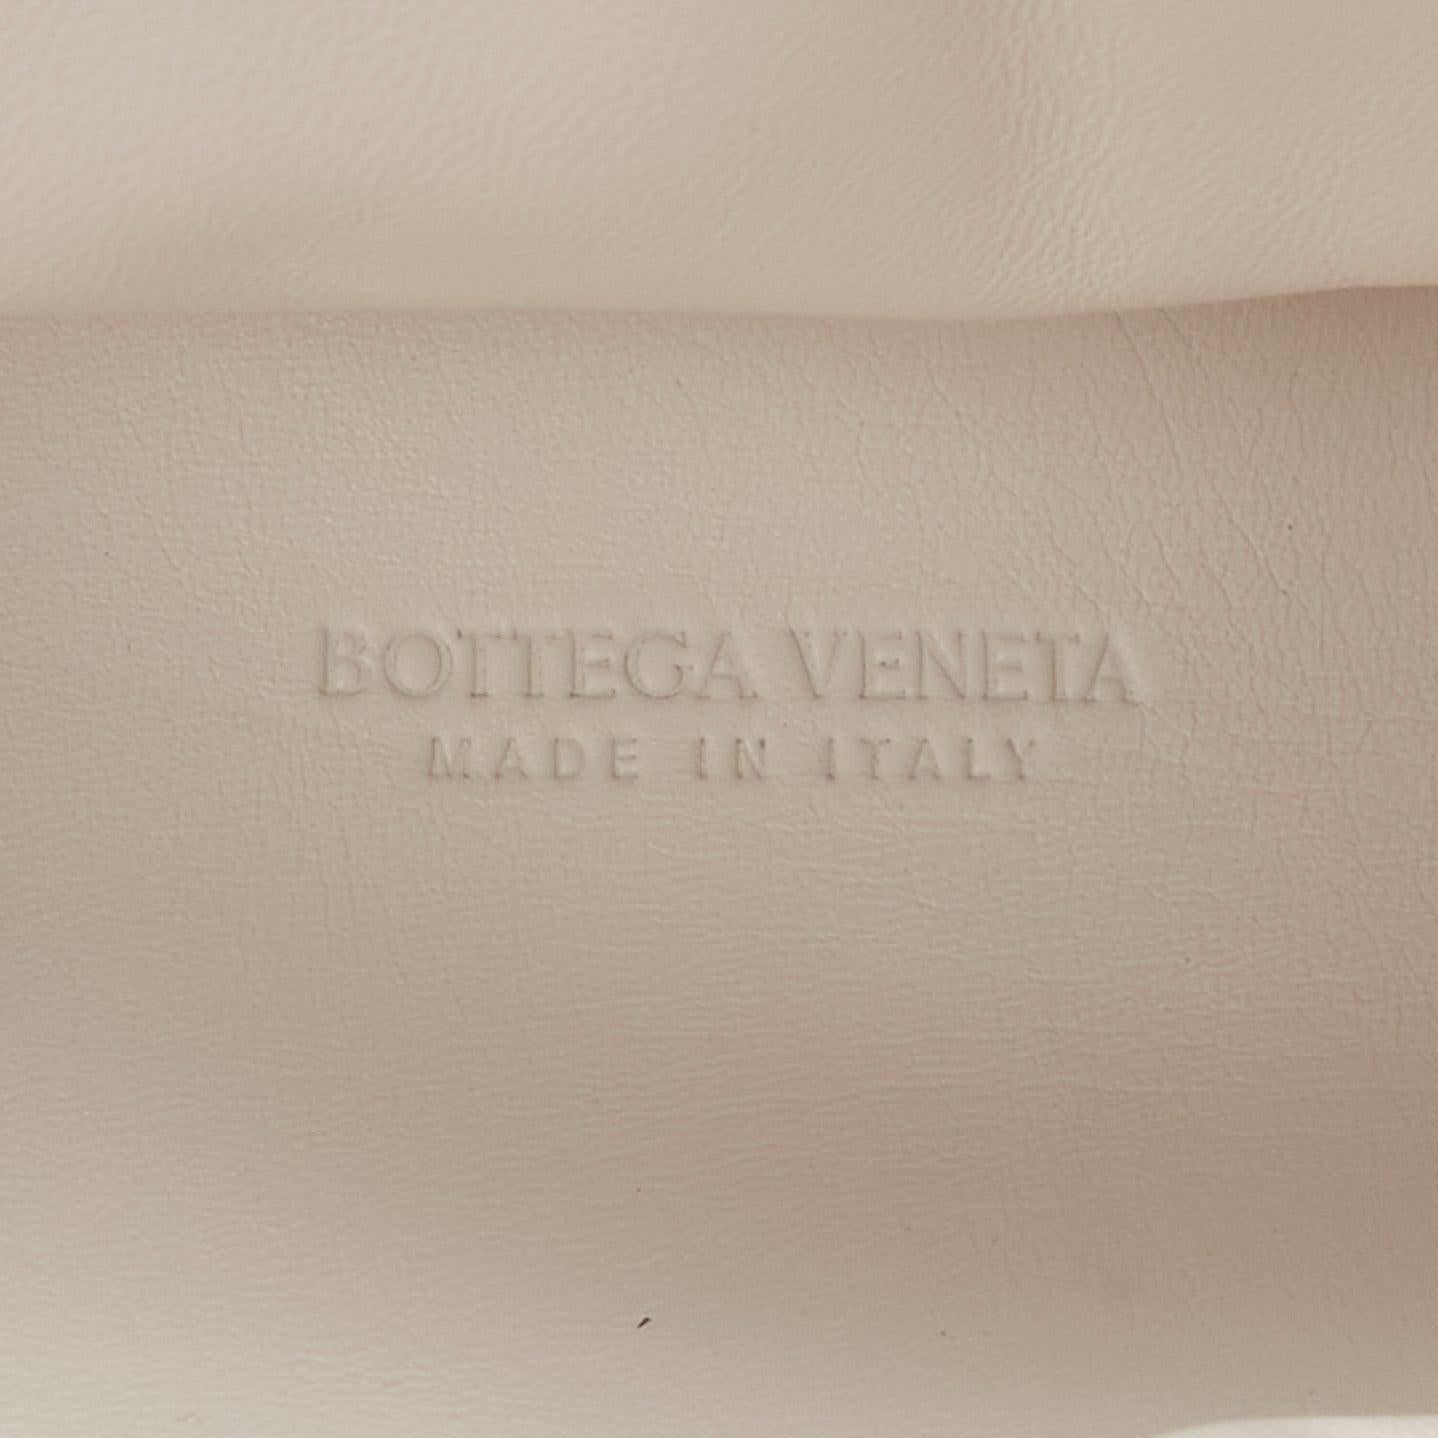 BOTTEGA VENETA Point Triangle white sponge boucle curly raffia leather bag For Sale 5